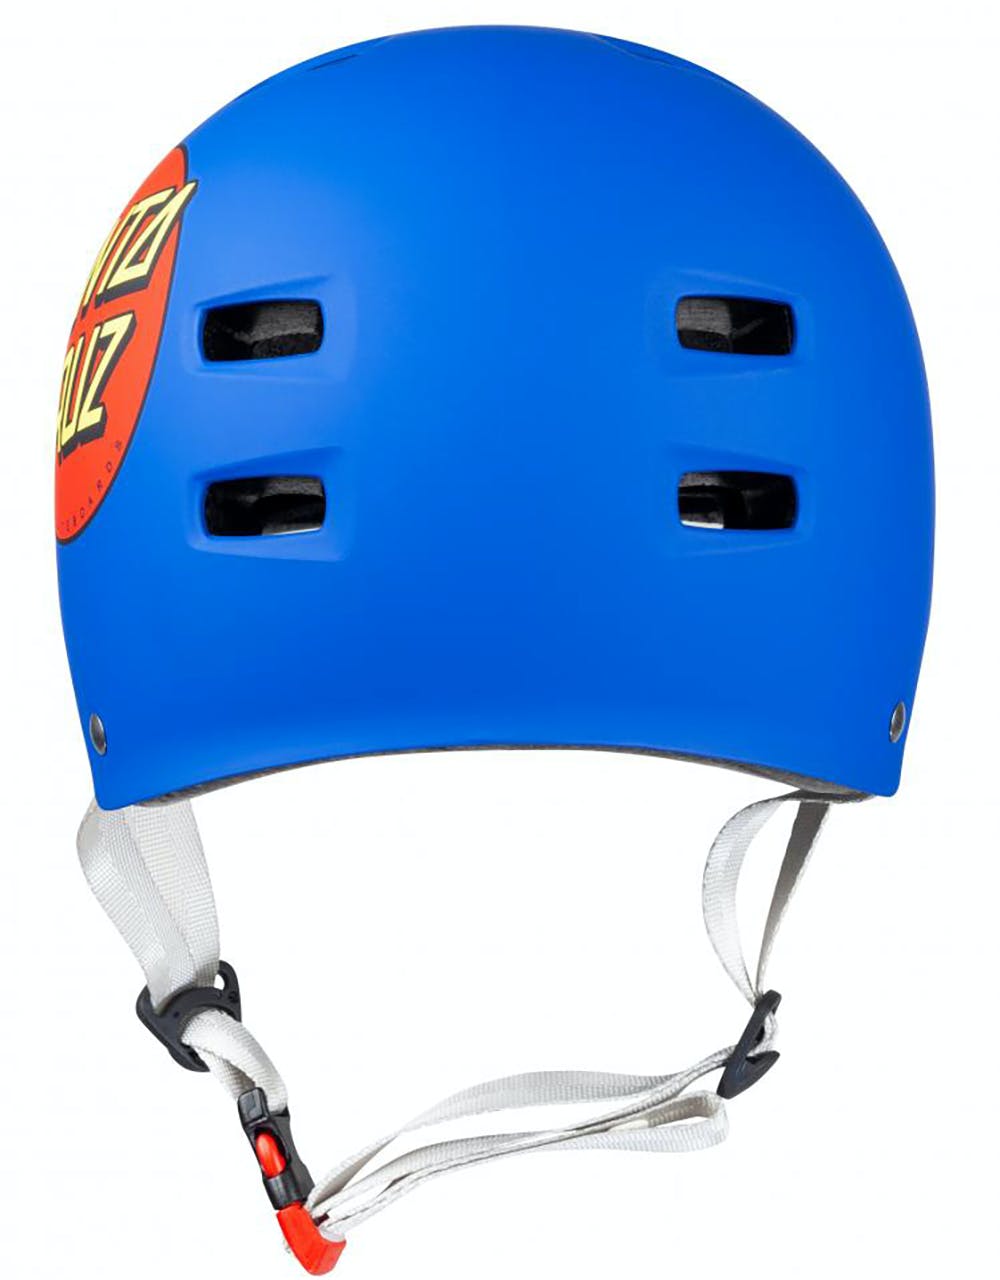 Bullet x Santa Cruz Classic Dot Helmet - Matt Blue